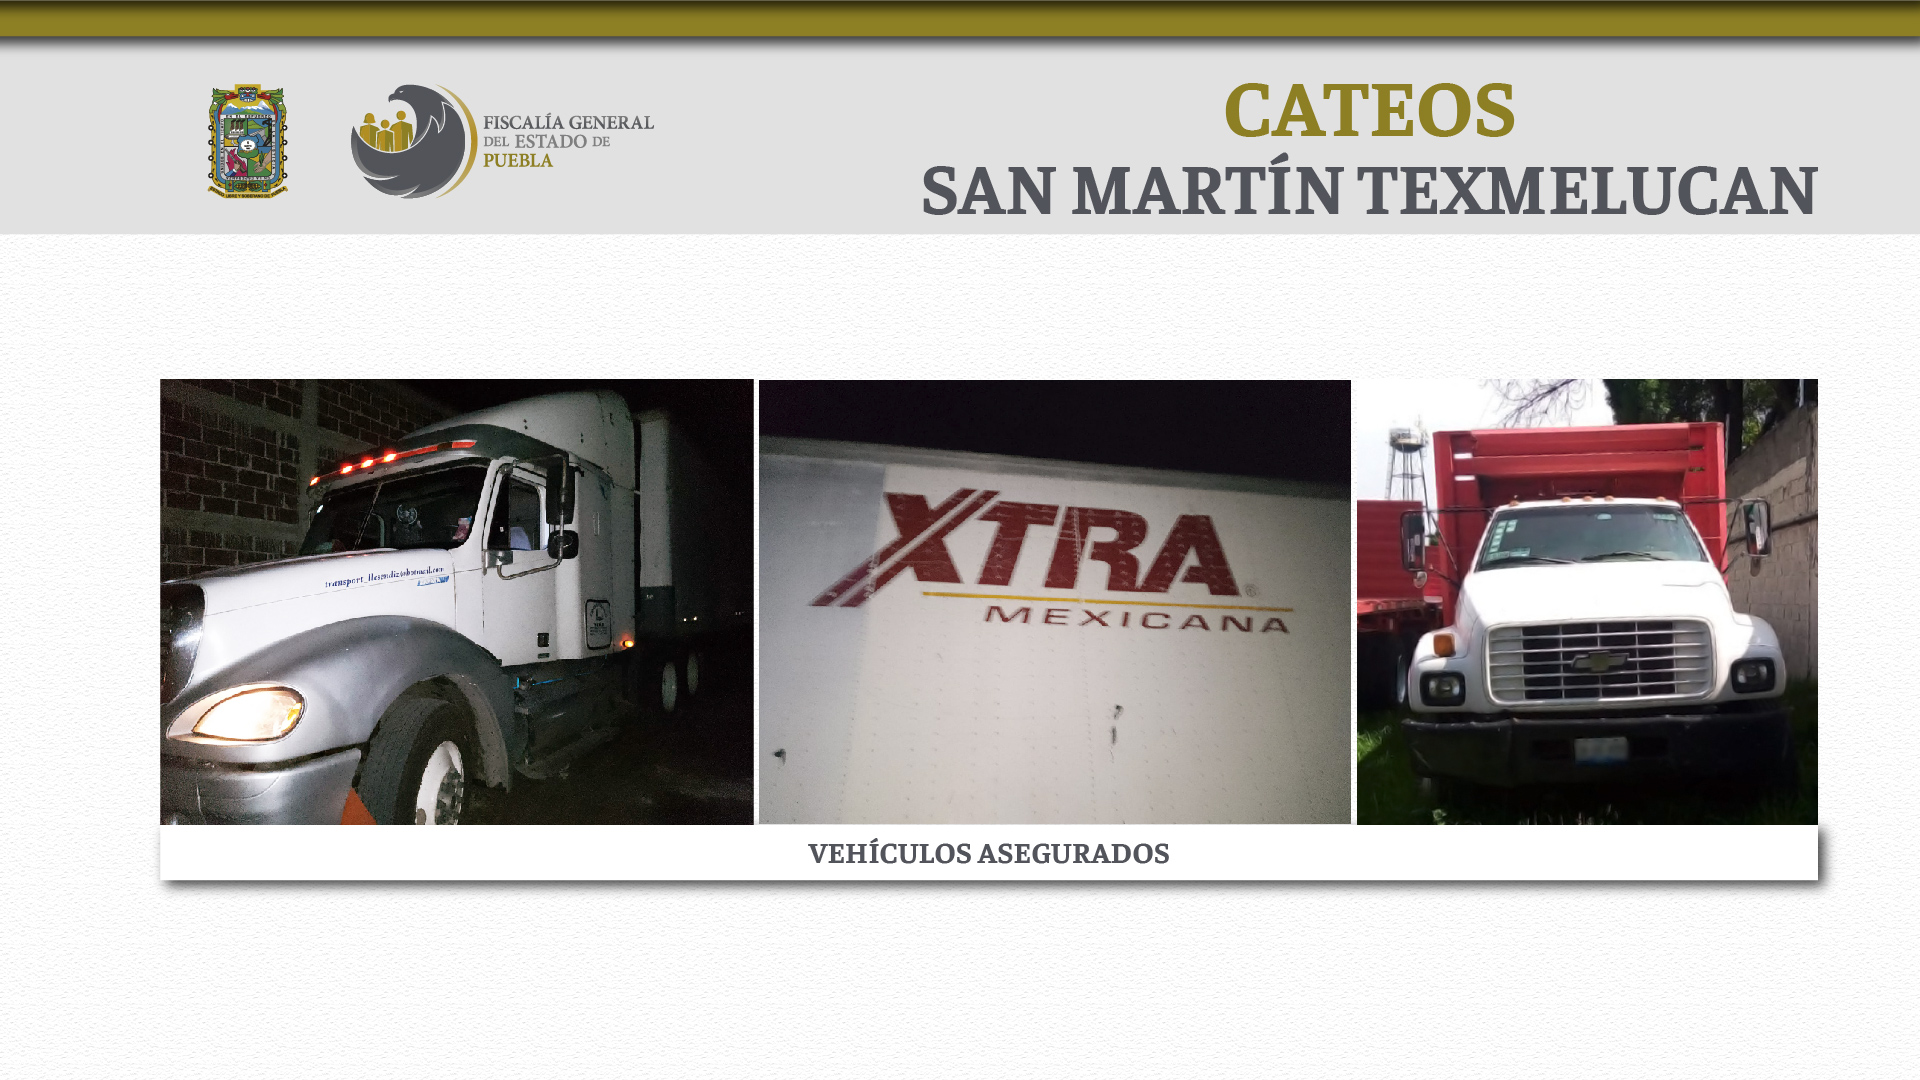 Durante cateos en San Martín Texmelucan, FGE recupera vehículos robados